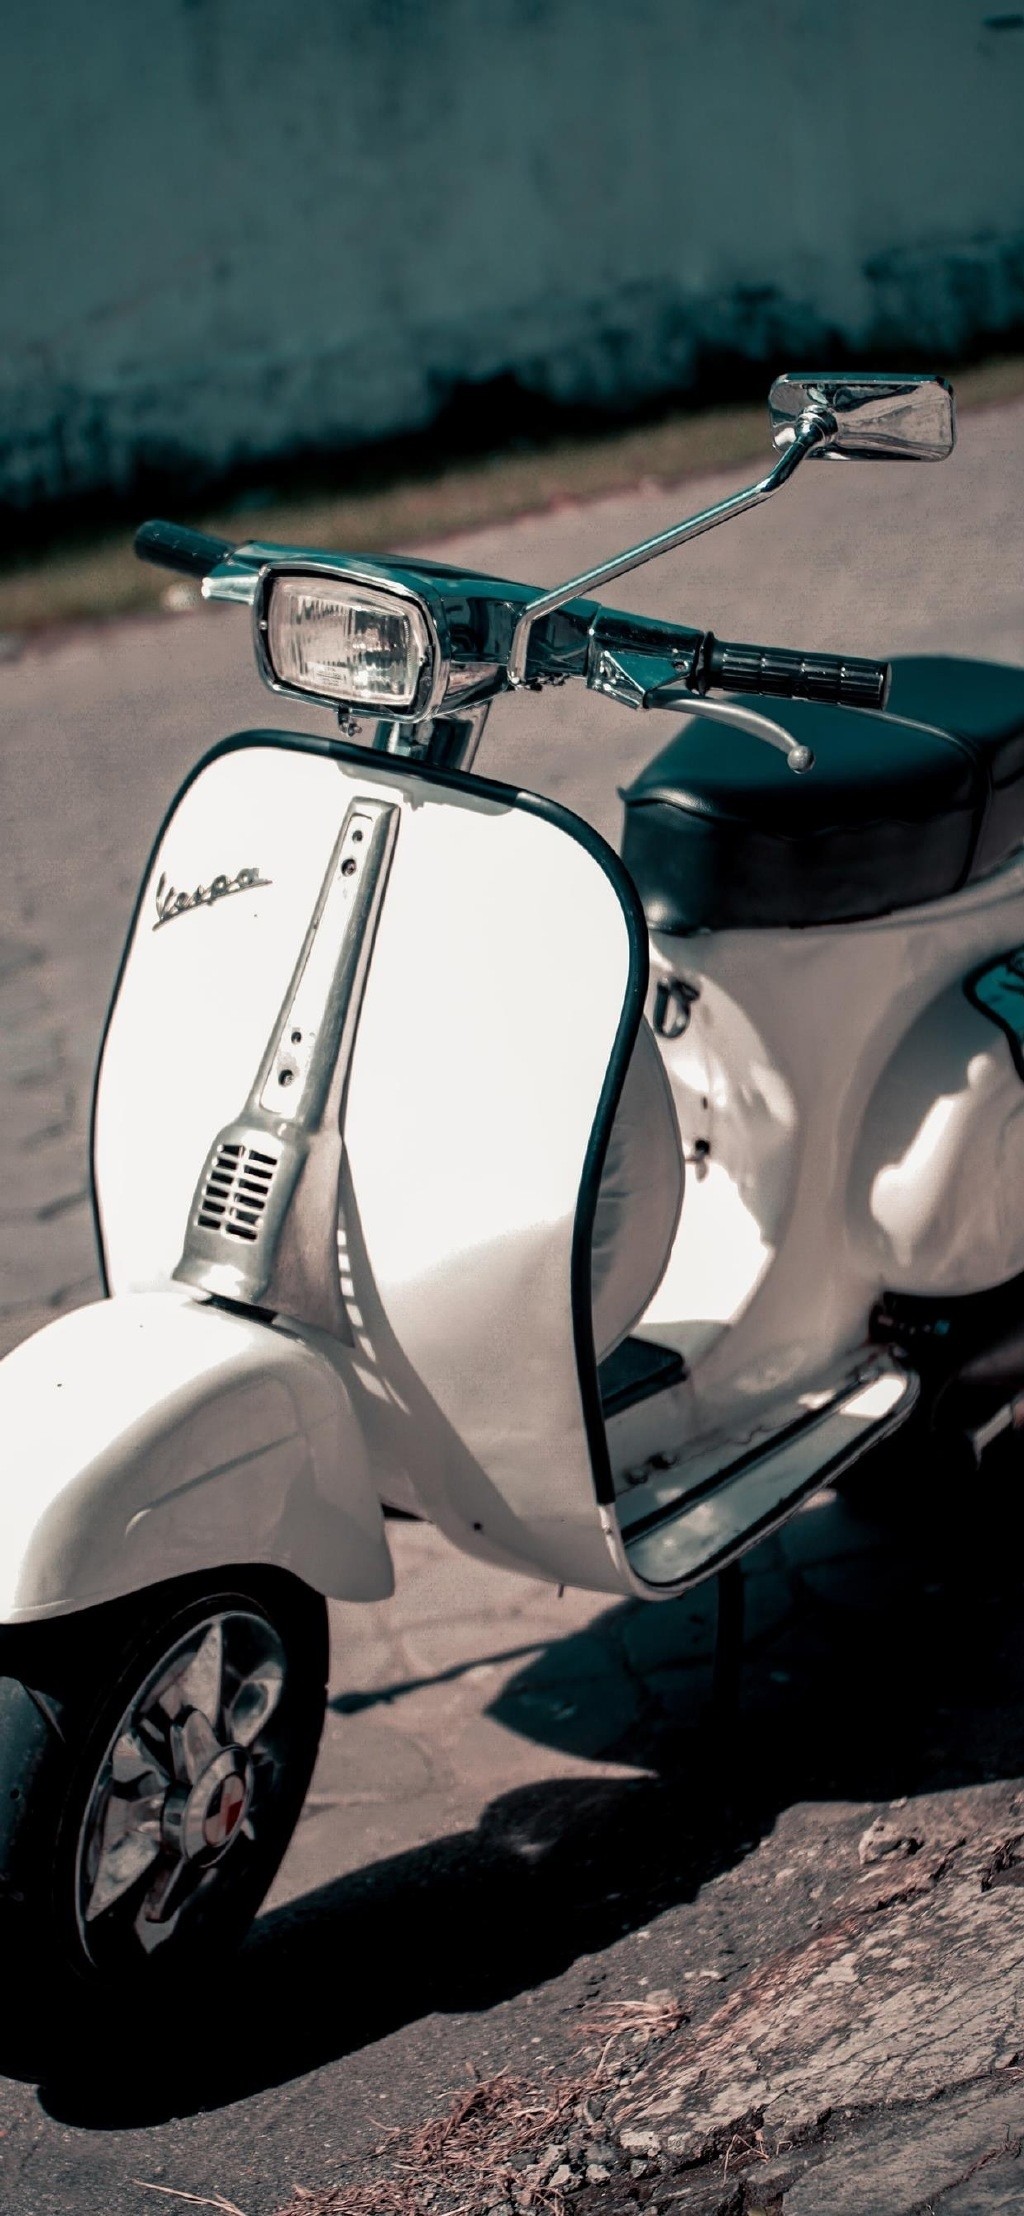 酷帅摩托机车摄影高清手机壁纸